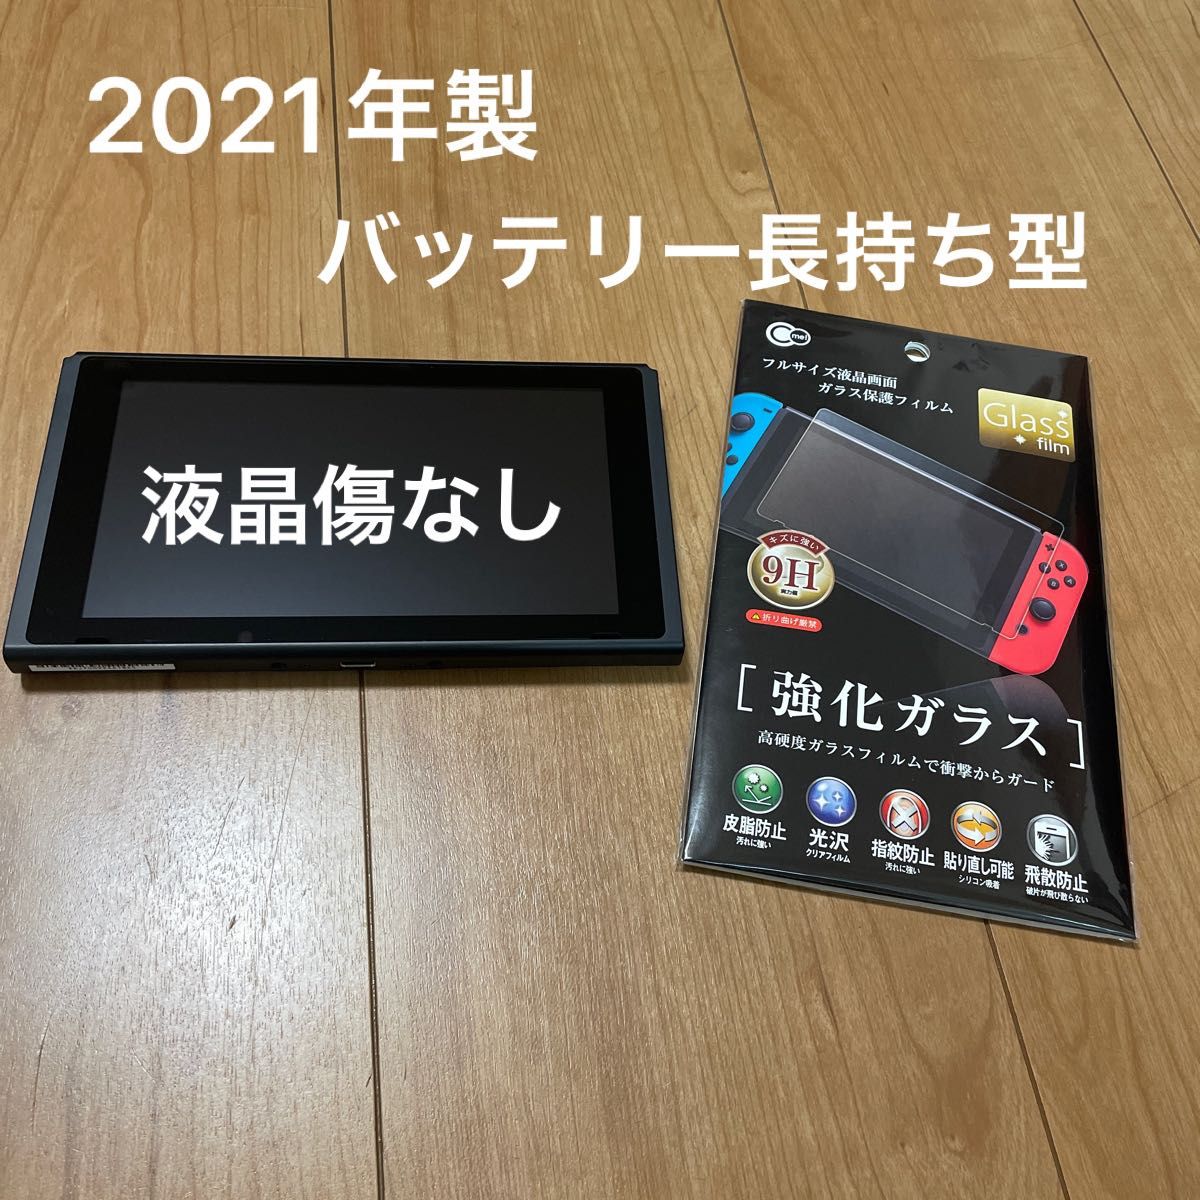 12182【2021年製】新型Nintendo Switch 本体のみ テレビゲーム Switch